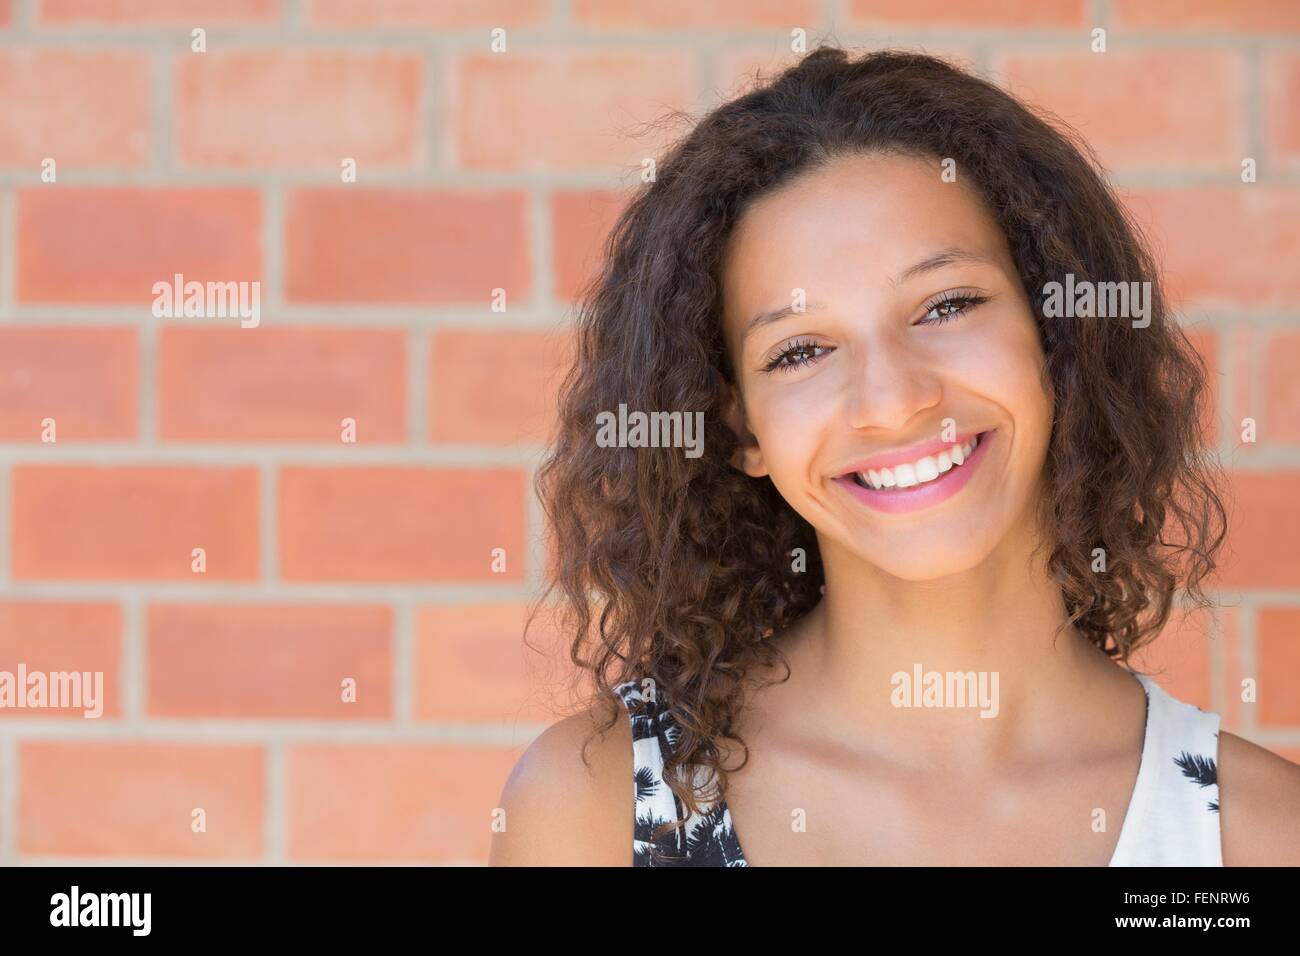 Retrato de niña alegre delante de la pared de ladrillo Foto de stock